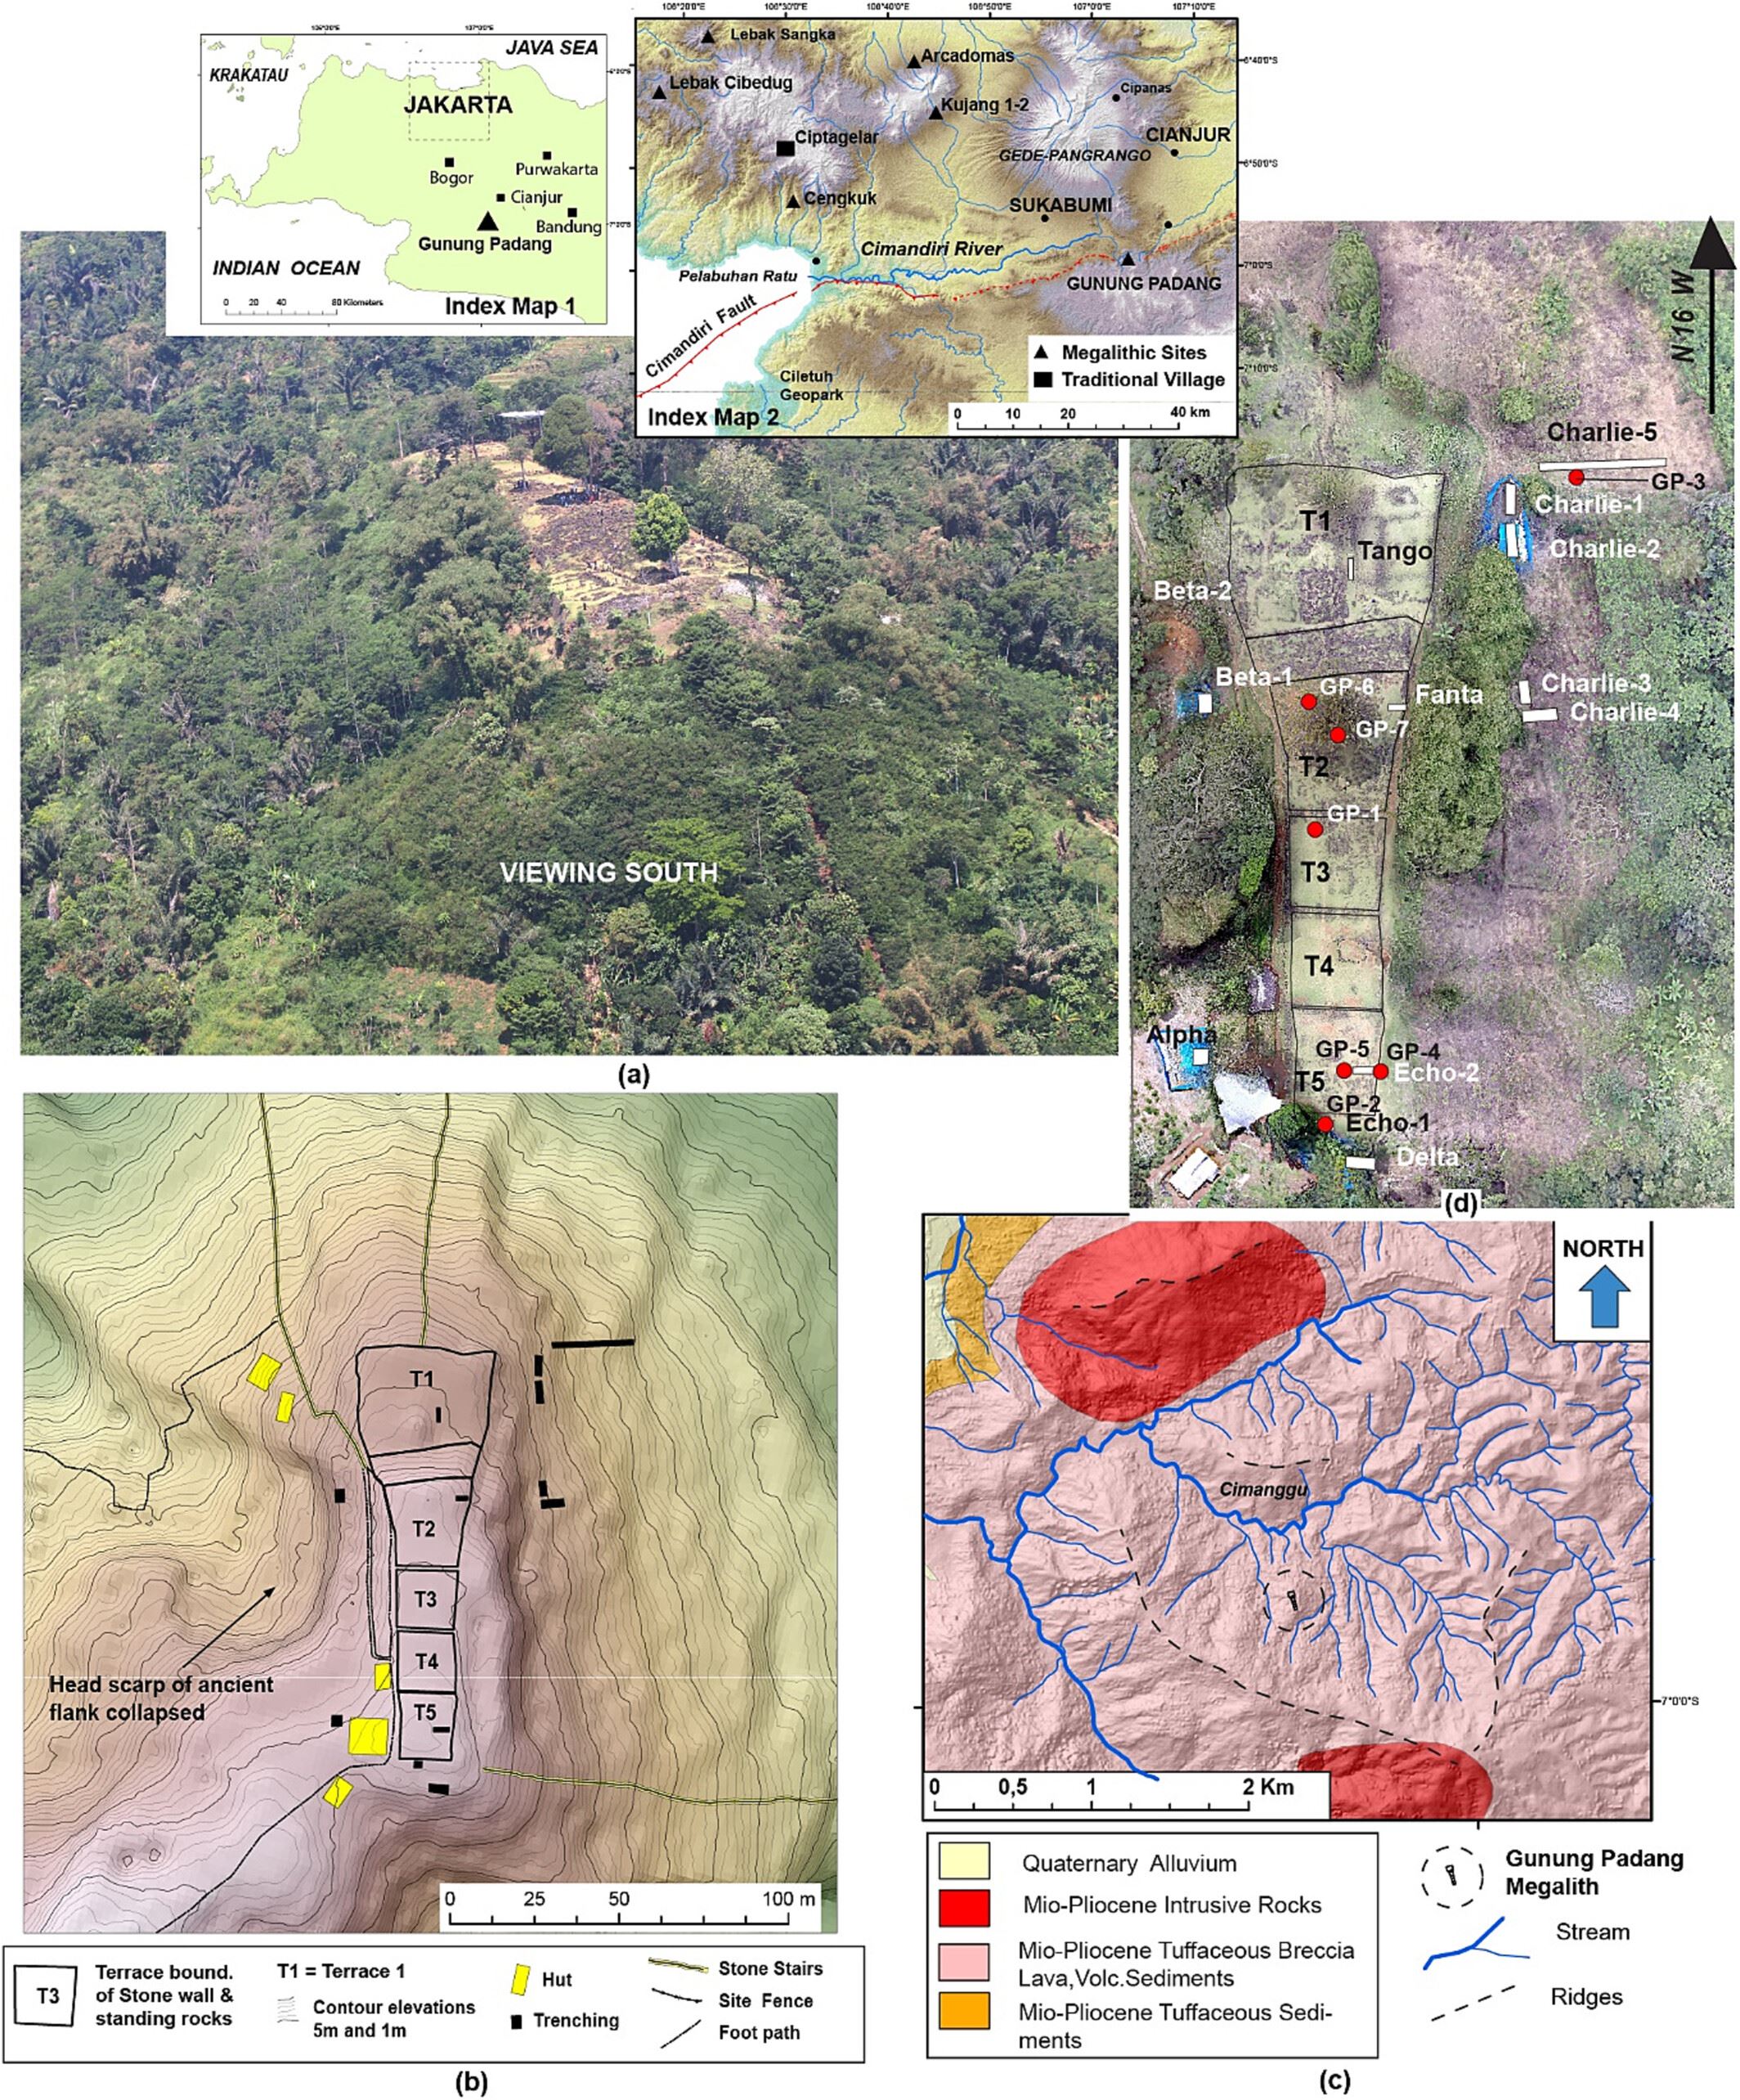 Veduta aerea di Gunung Padang presa da un elicottero. (b) Topografia e mappa del sito generate da un'indagine geodetica dettagliata. (c) Carta geologica della regione di Gunung Padang (Sudjatmiko, 1972 ). (d) Mappa ottenuta da un rilievo con drone condotto nel 2014, che indica le posizioni dei siti di scavo (rettangoli bianchi) e dei siti di carotaggio (punti rossi). T1, Terrazza 1; T2, Terrazza 2; T3, Terrazza 3; T4, Terrazza 4; T5, Terrazza